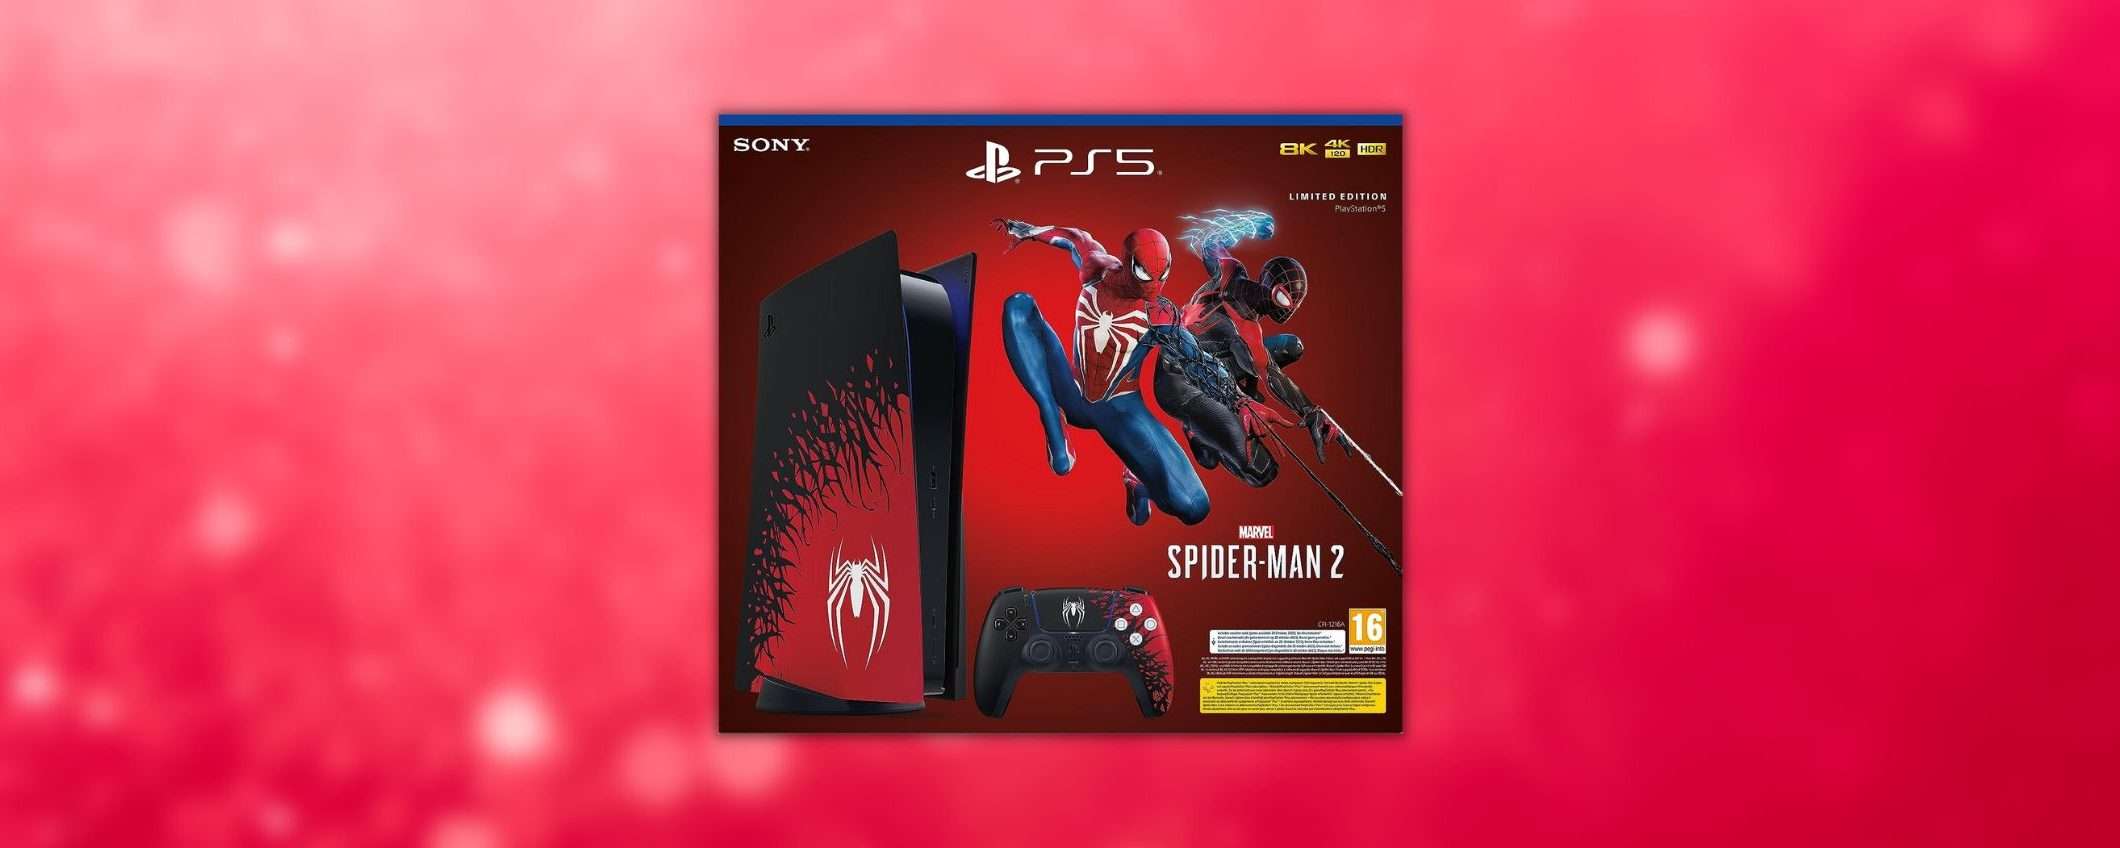 PS5 Spider-Man 2 Limited Edition: prenotala al miglior prezzo su Amazon